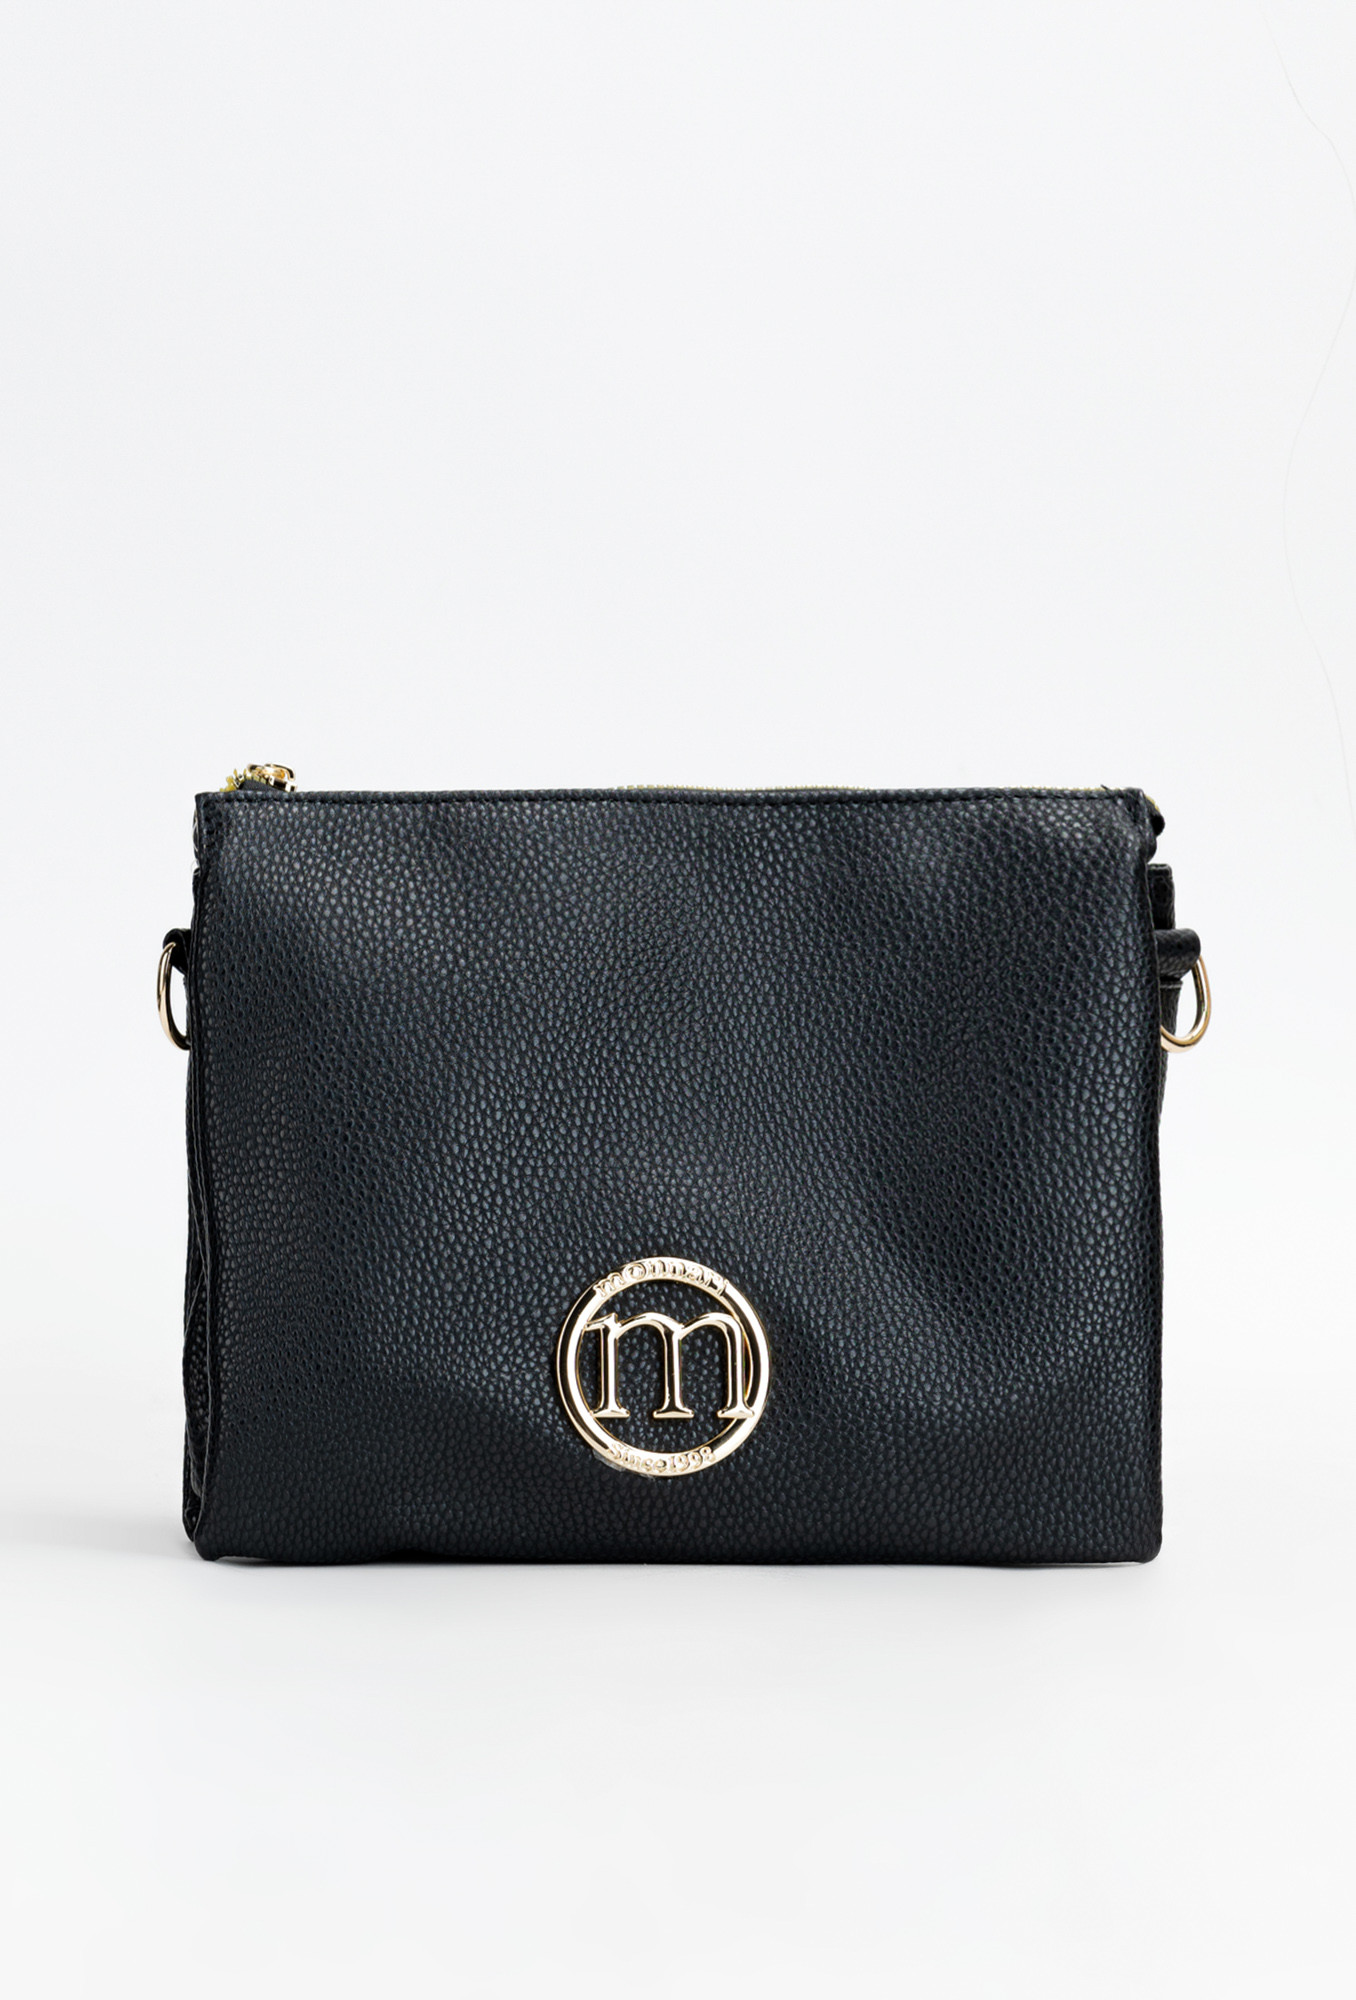 Monnari Bags Dámská kabelka s logem značky Monnari Black OS